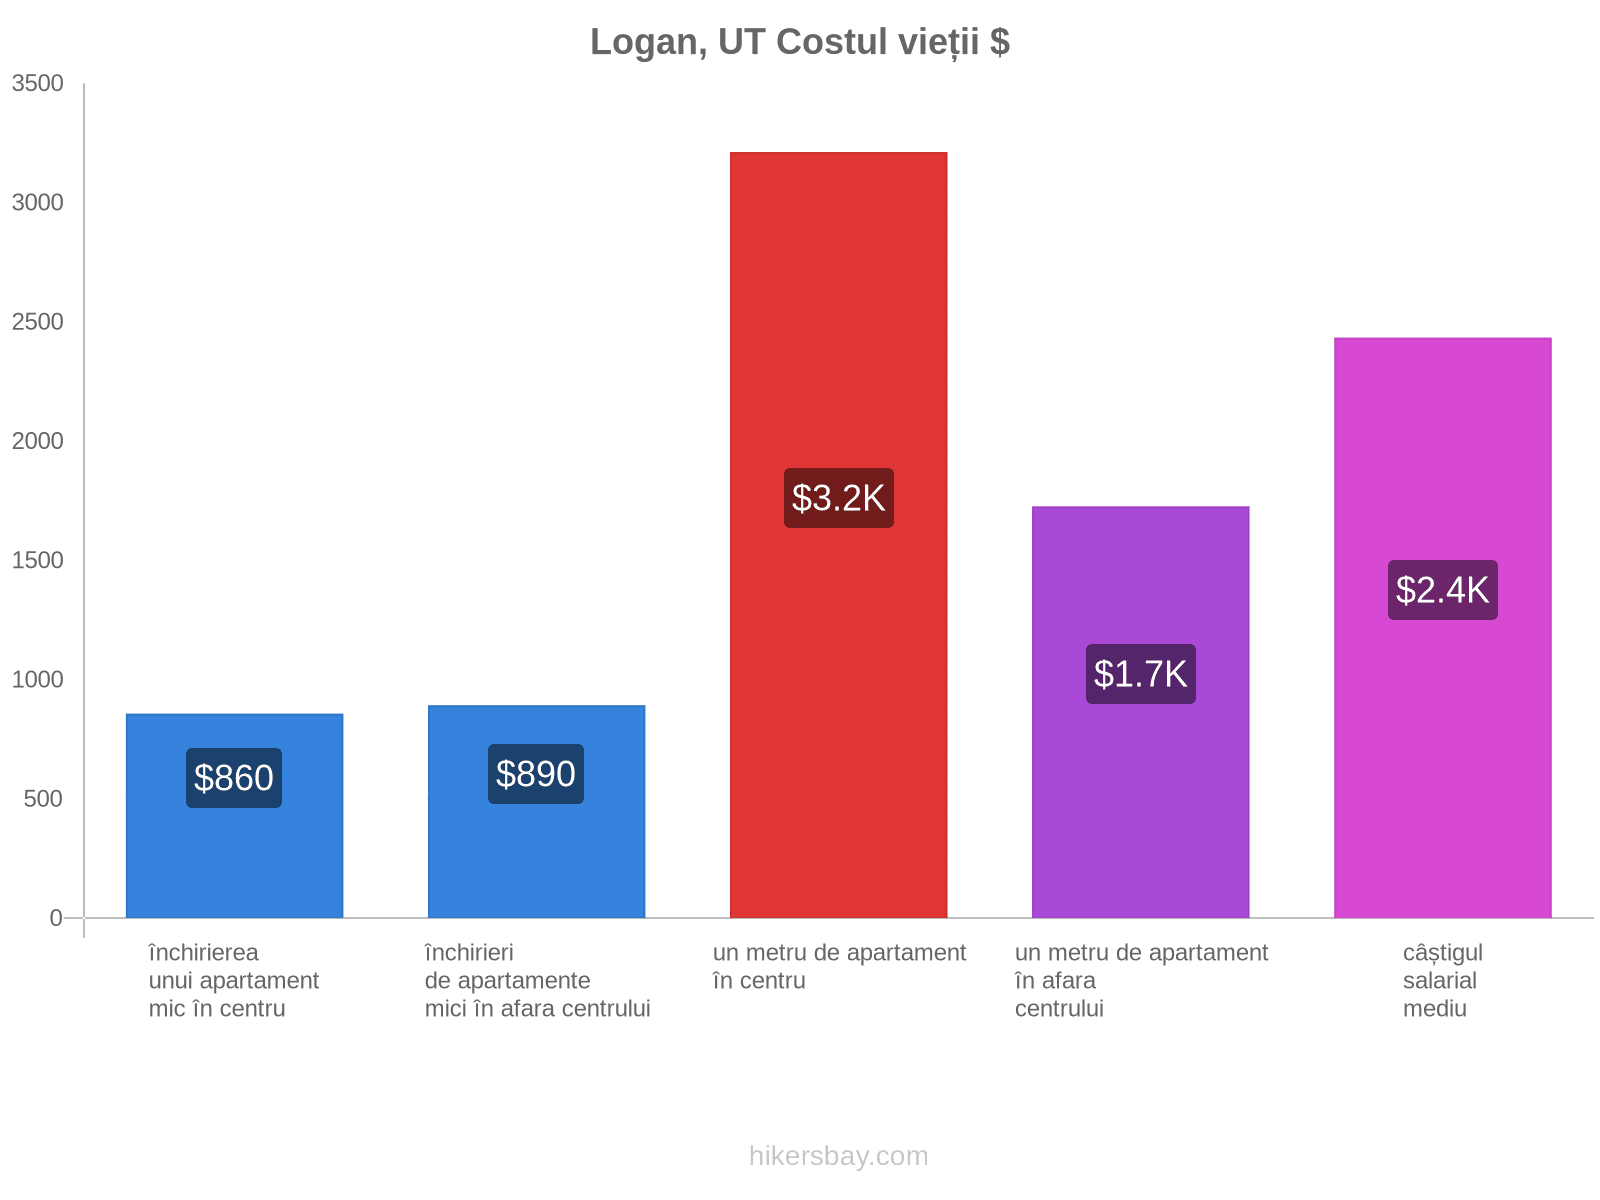 Logan, UT costul vieții hikersbay.com